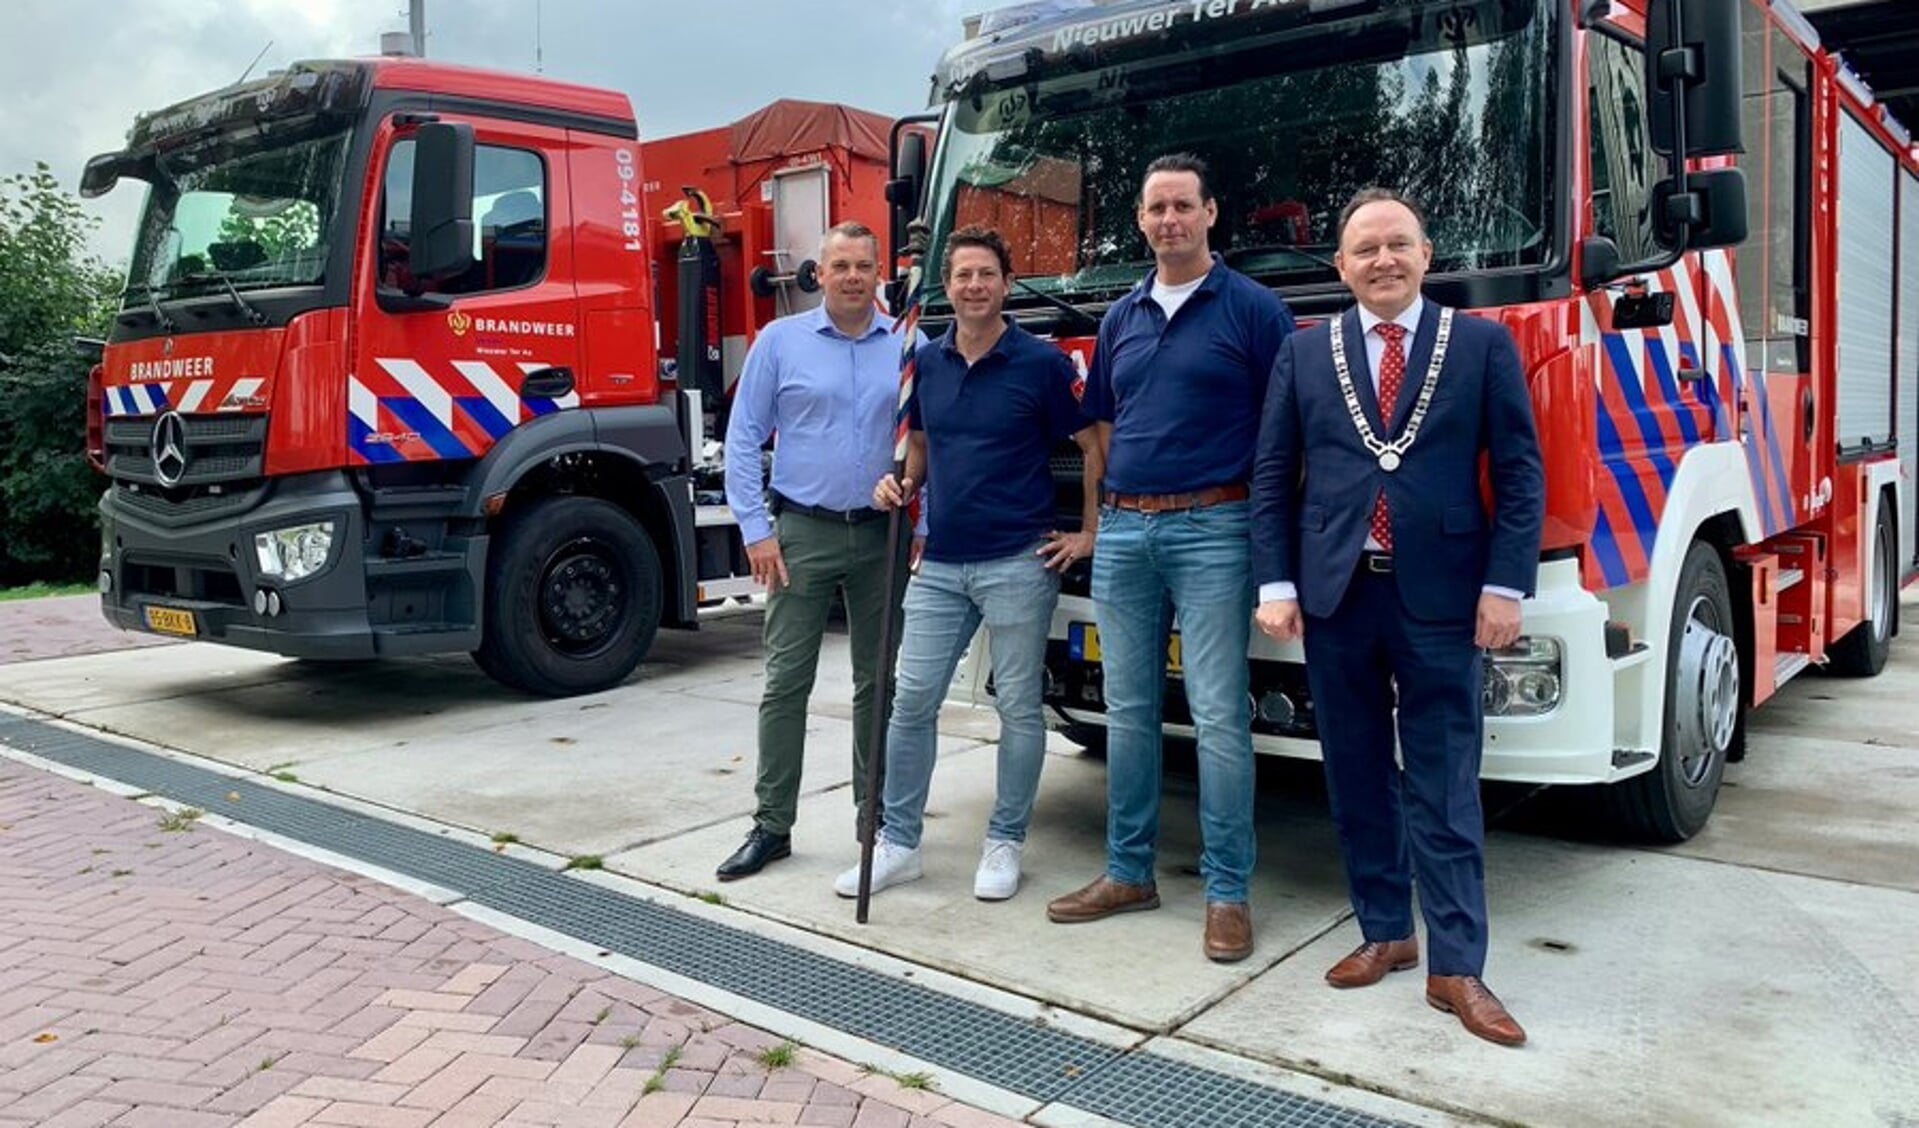 Clustercommandant @nickschaick, Tom van Kuijk, Jan Verwoerd.en burgemeester Reinders 